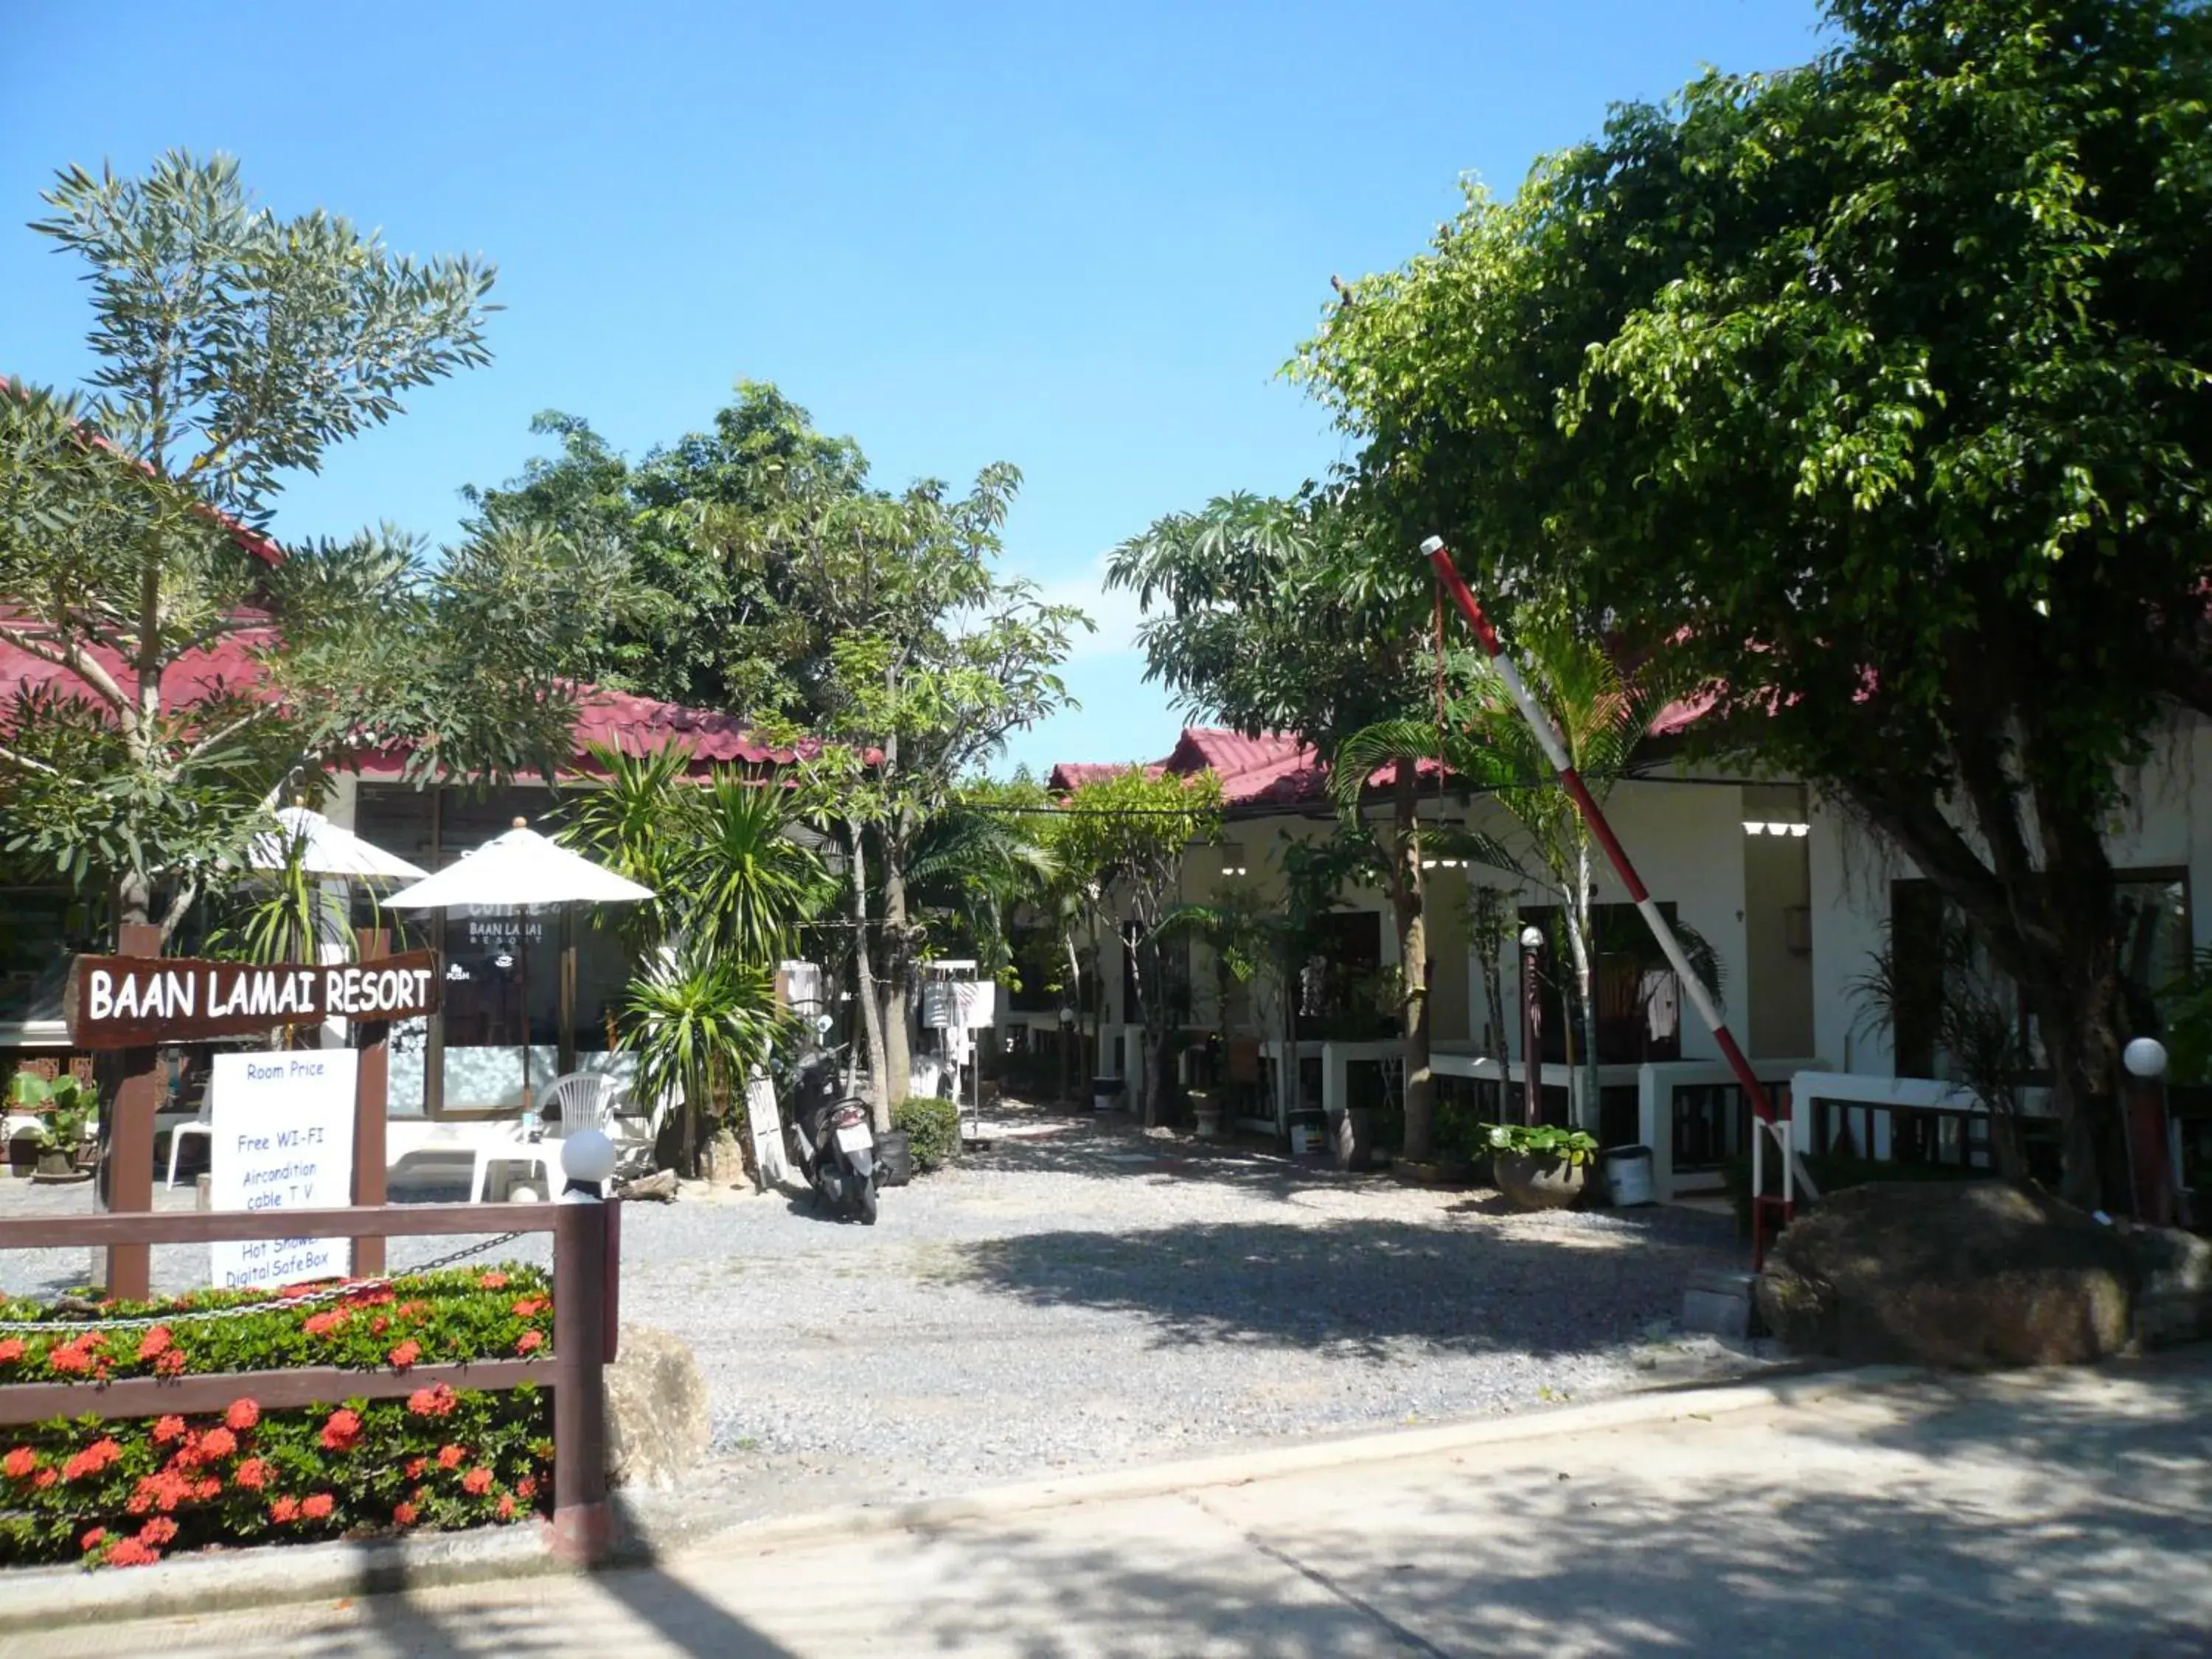 Property building in Baan Lamai Resort